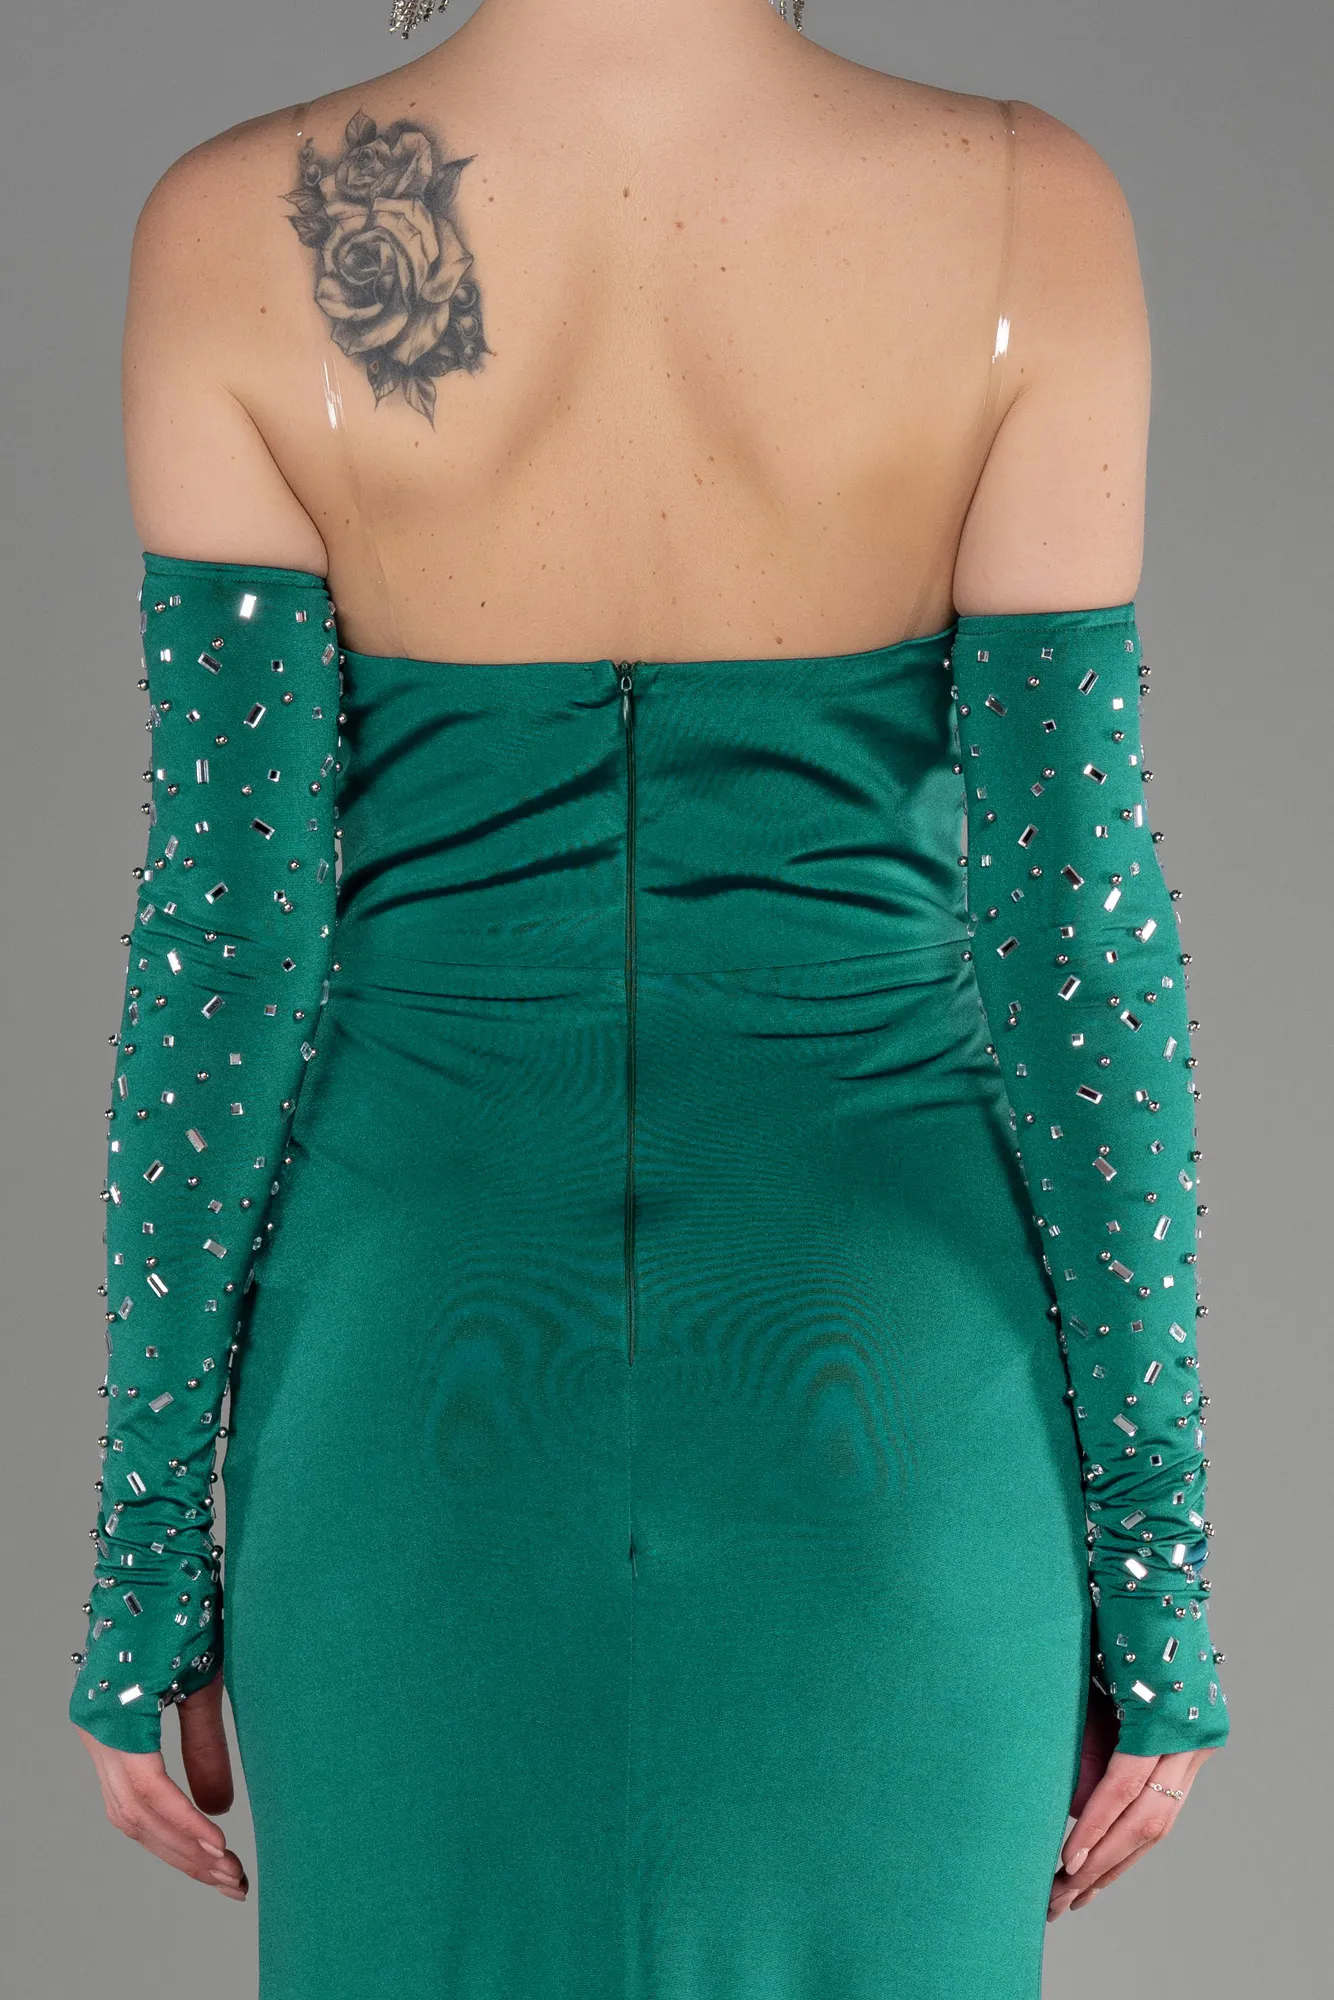 Emerald Green-Strapless Long Evening Dress ABU3824